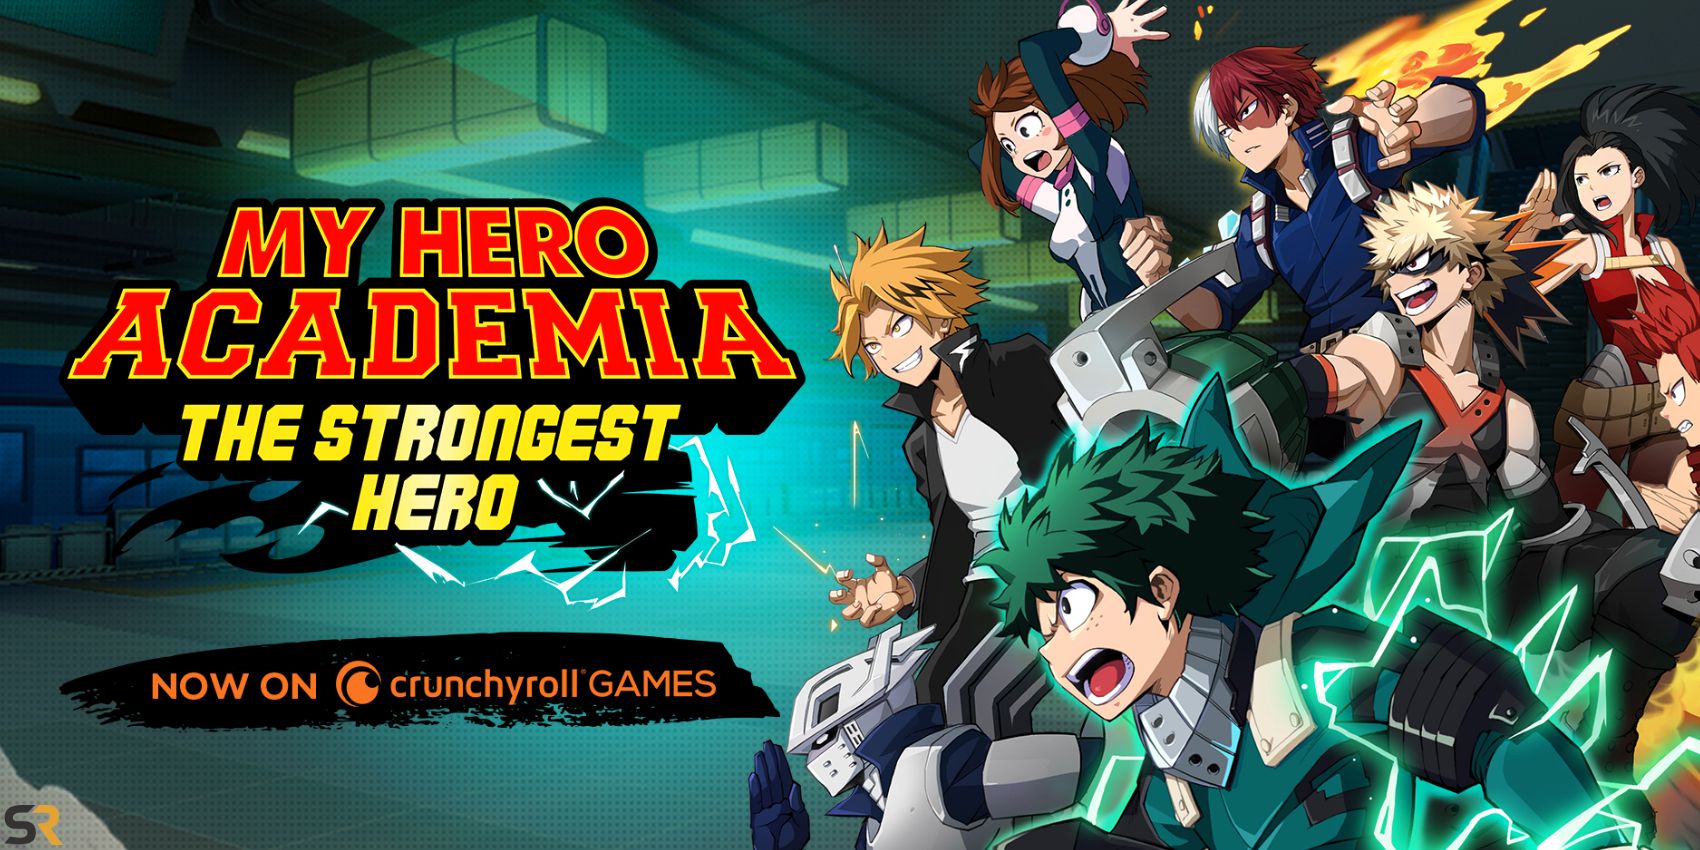 Crunchyroll celebra el acuerdo de My Hero Academia con eventos dentro del juego